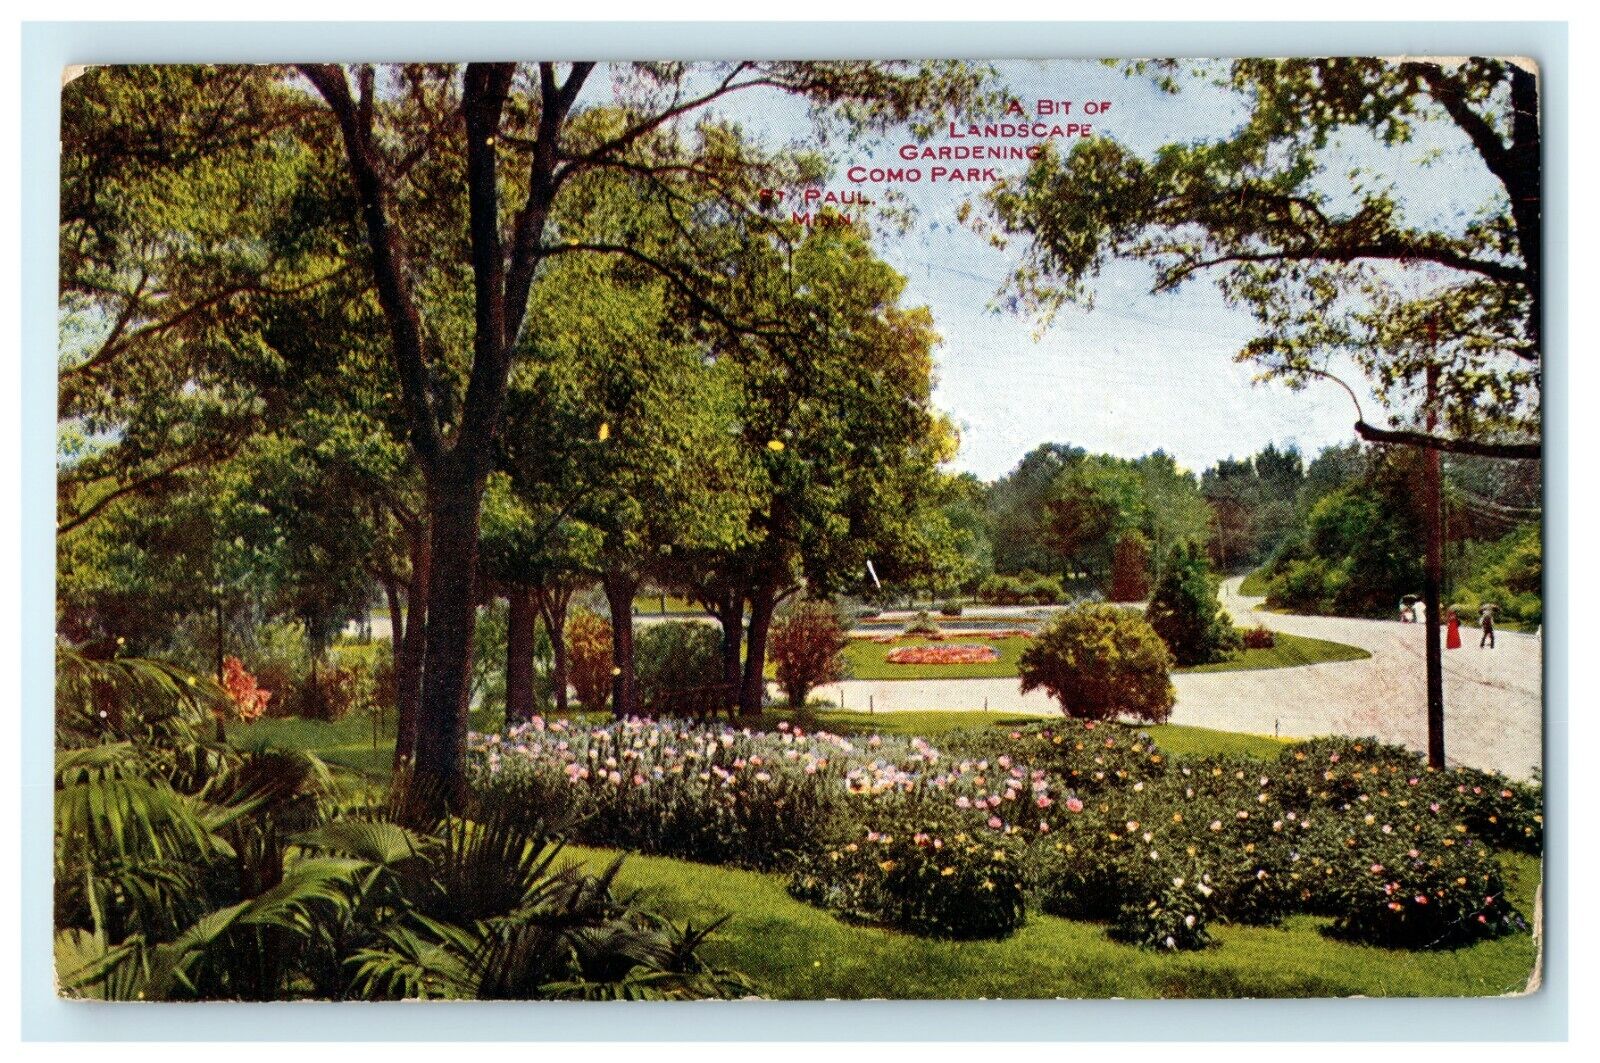 1911 Landscape Gardening, Como Park, St Paul MN Antique Postcard